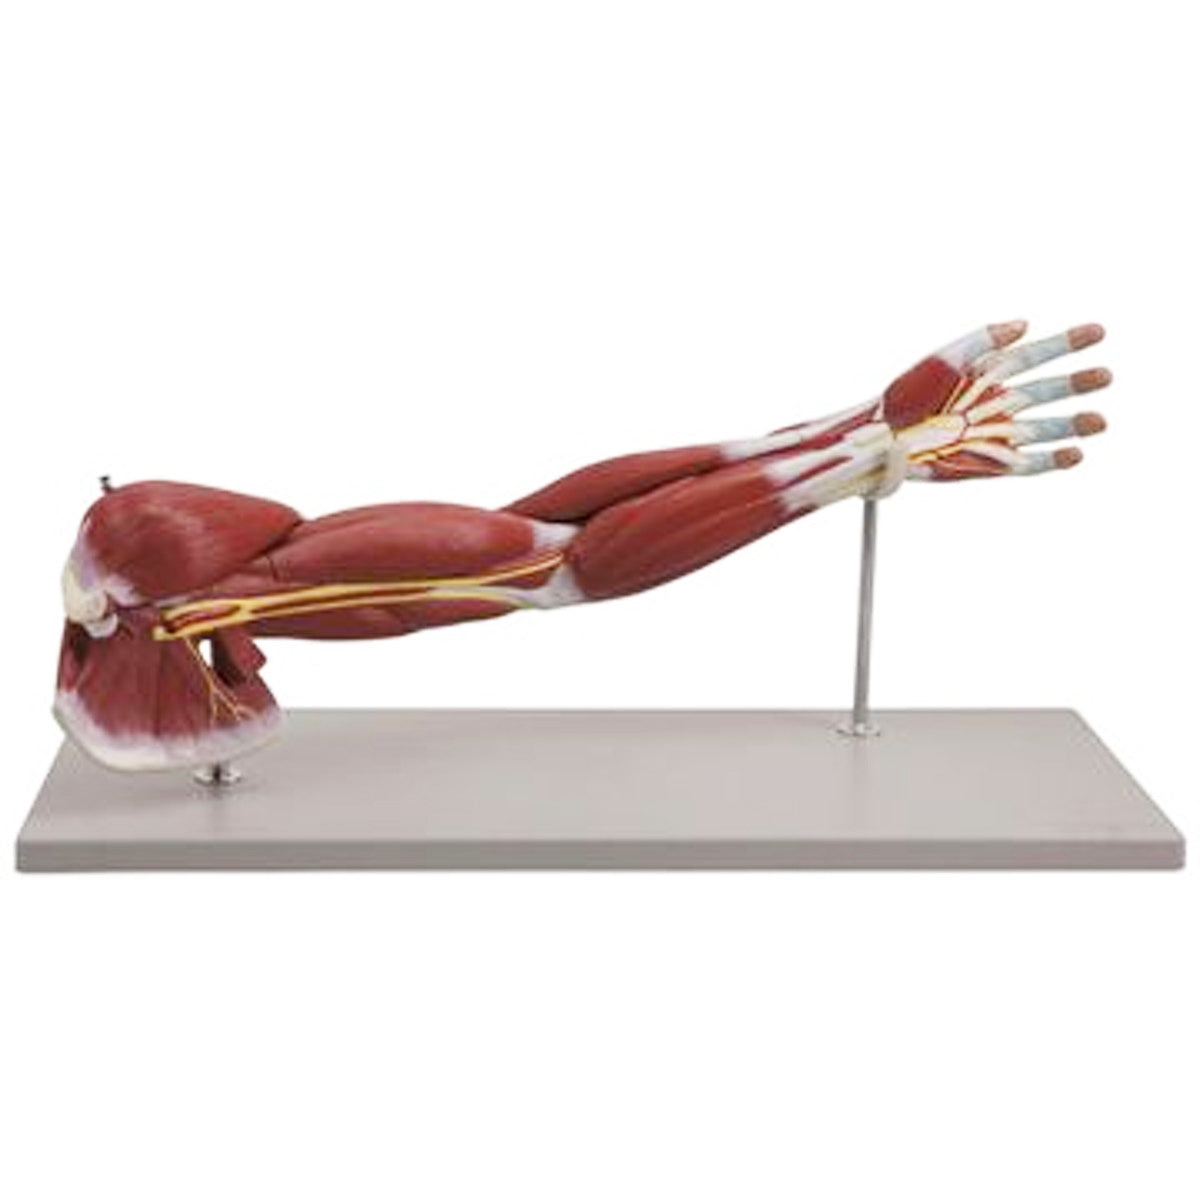 Komplett modell av arm med muskler i förhållande till större kärl och nerver - kan delas upp i 7 delar